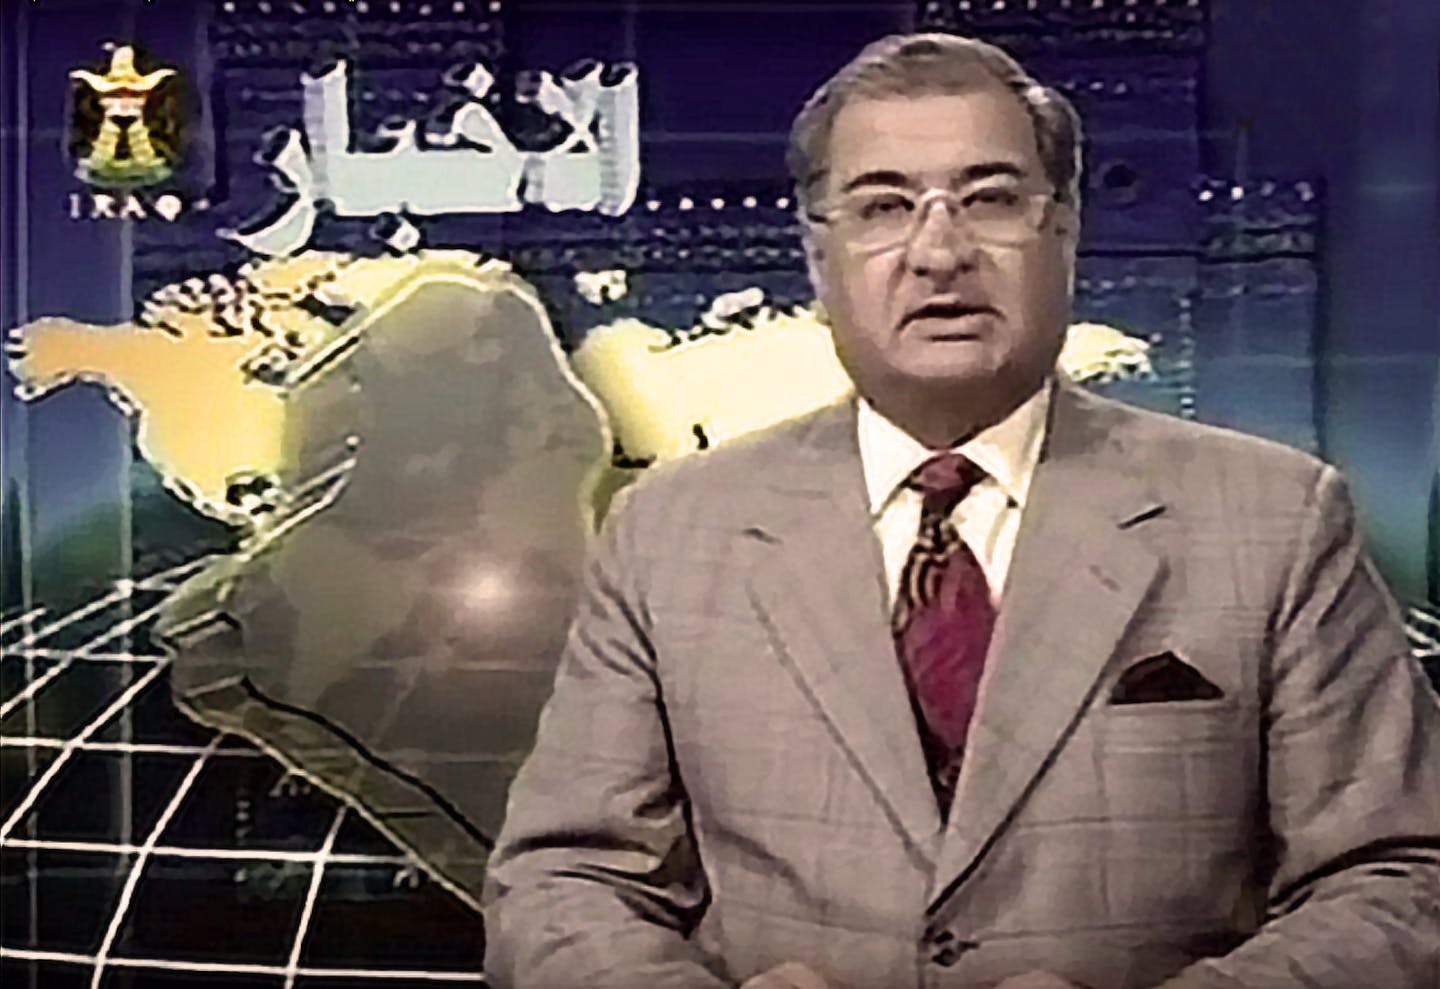 صورة قناة إخبارية عراقية تستغني عن موظفيها وتبدأ ببث الأخبار حصرياً من الأرشيف